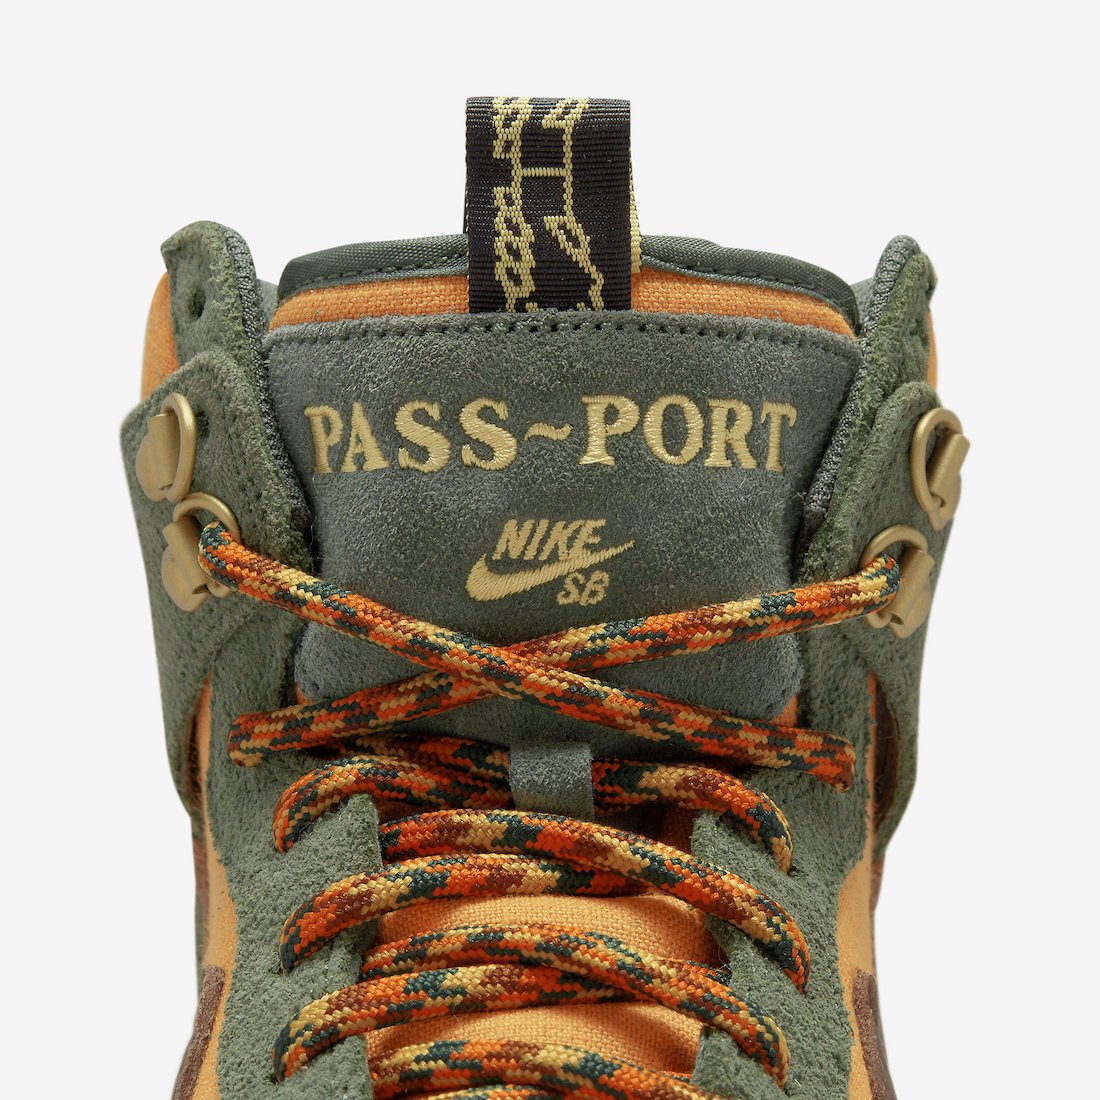 Pass-Port Nike SB Dunk High DO6119-300 Release Date